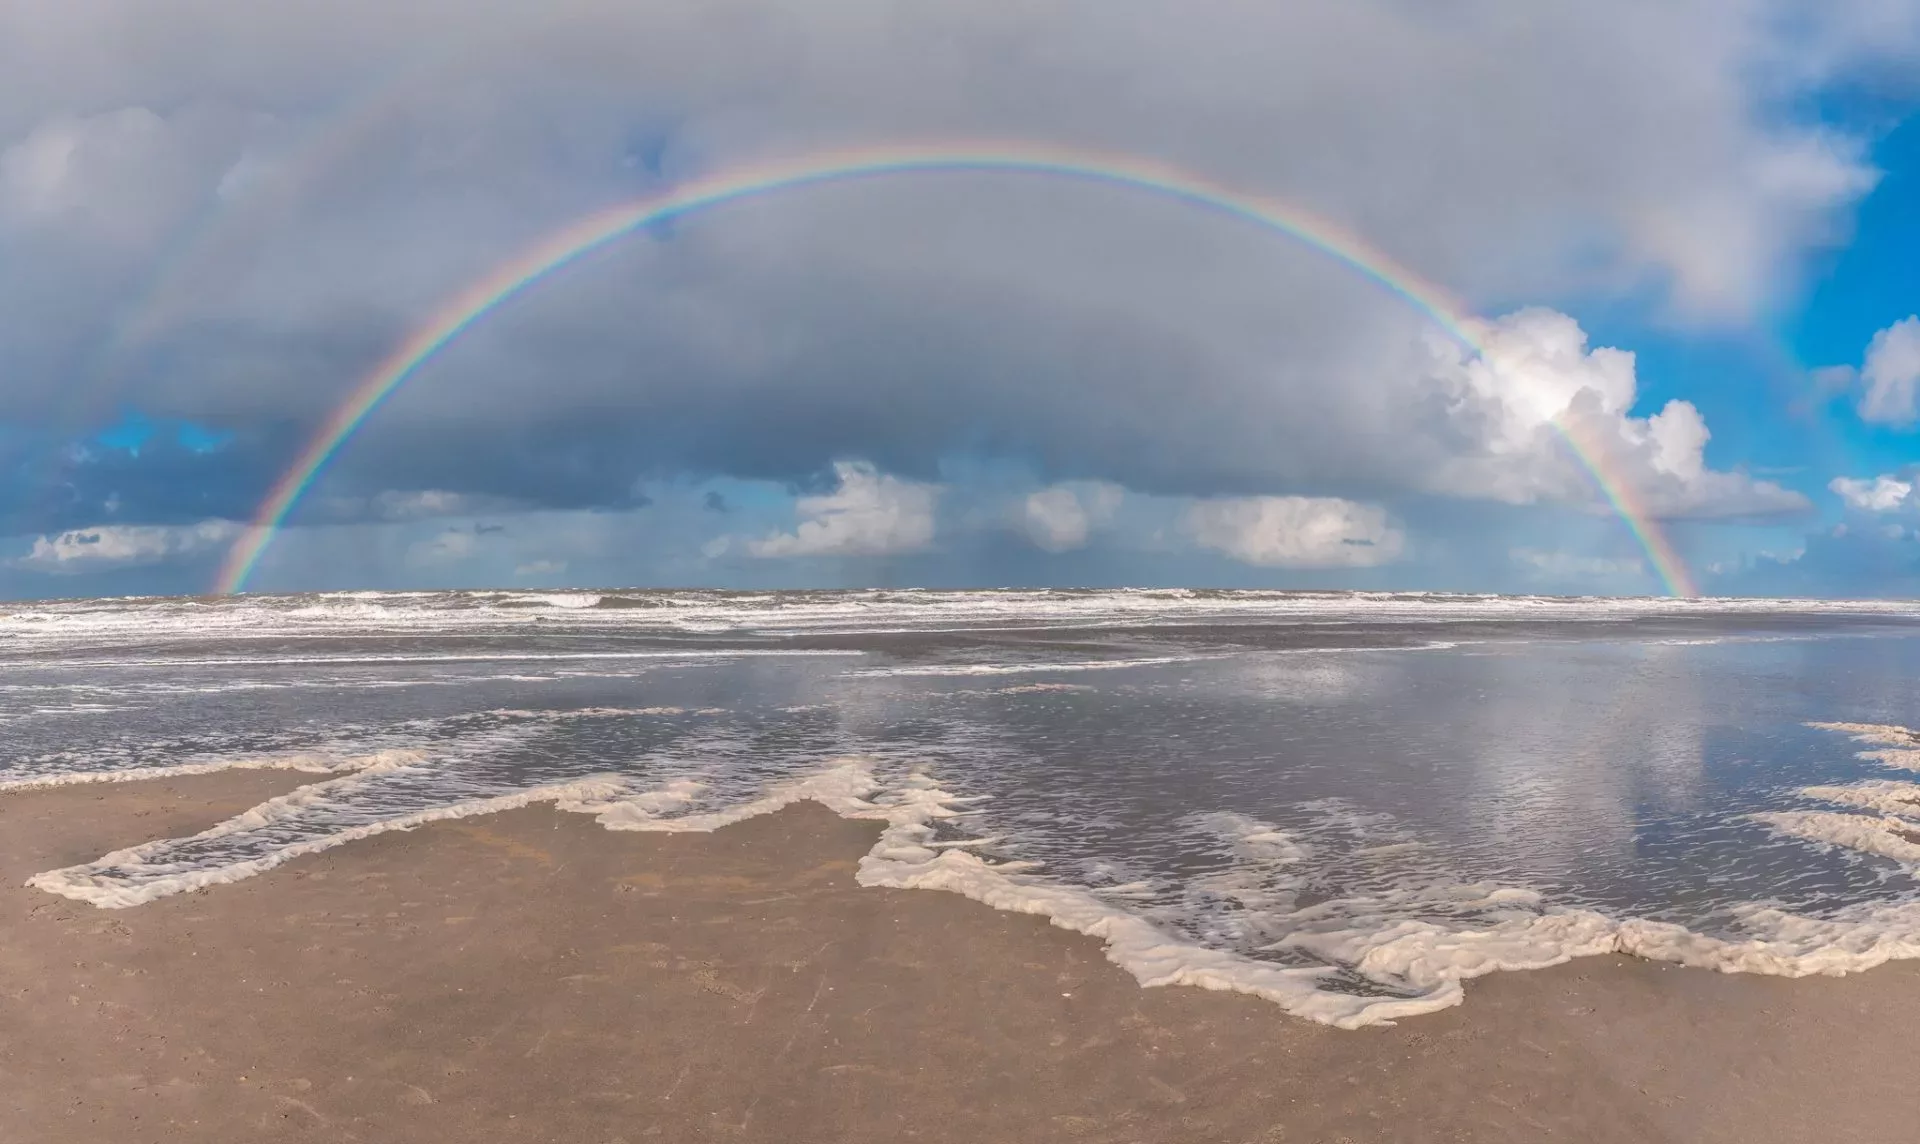 Regenboog aan het strand van Hoek van Holland